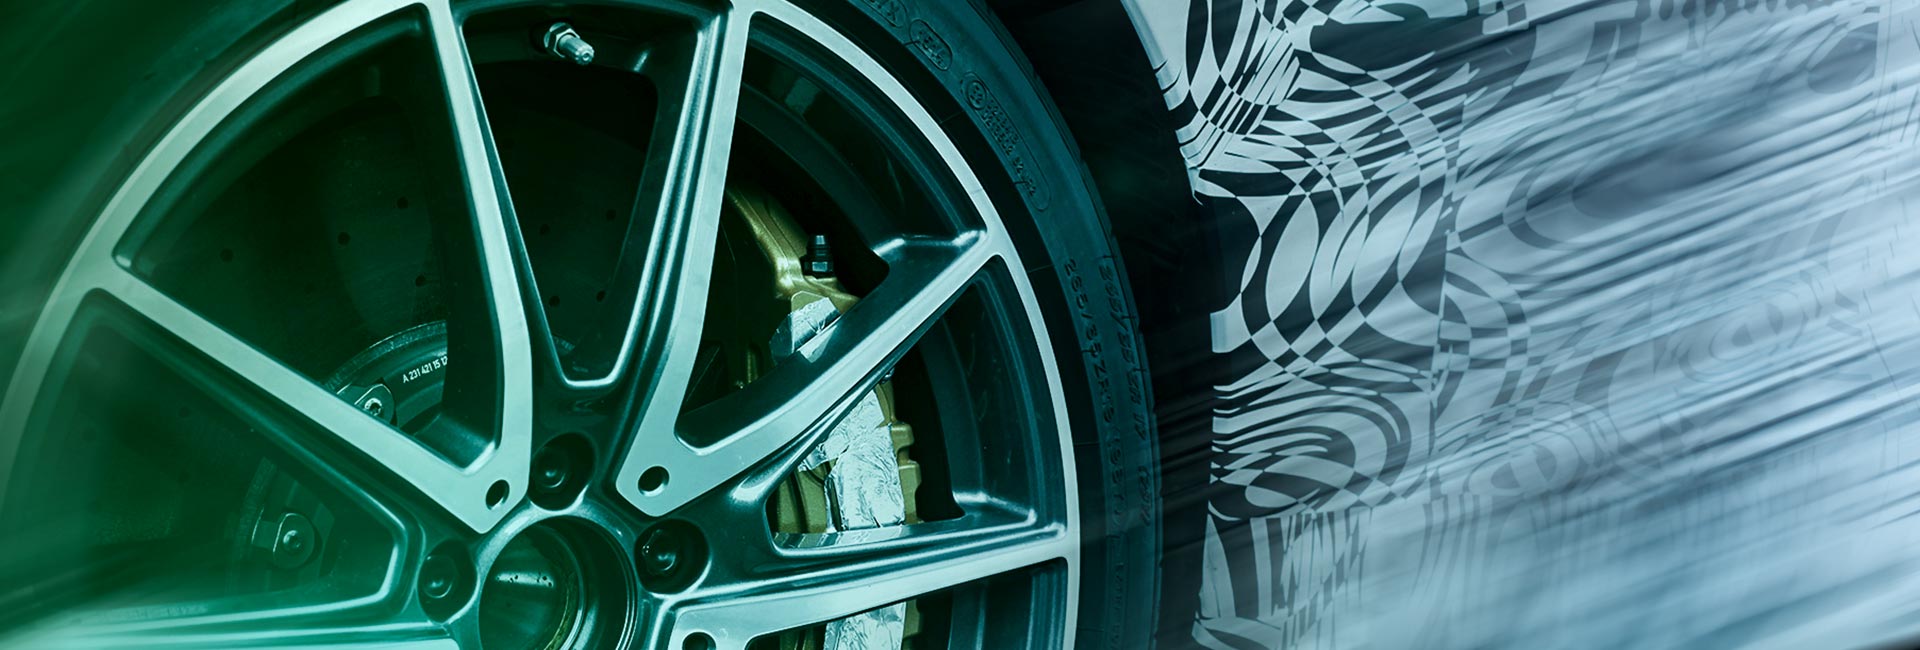 Durch den Betrieb von Testzentren für Fahrzeugentwicklung bietet Formel D Automobilherstellern wirtschaftliche Lösungen für die Fahrzeugerprobung.